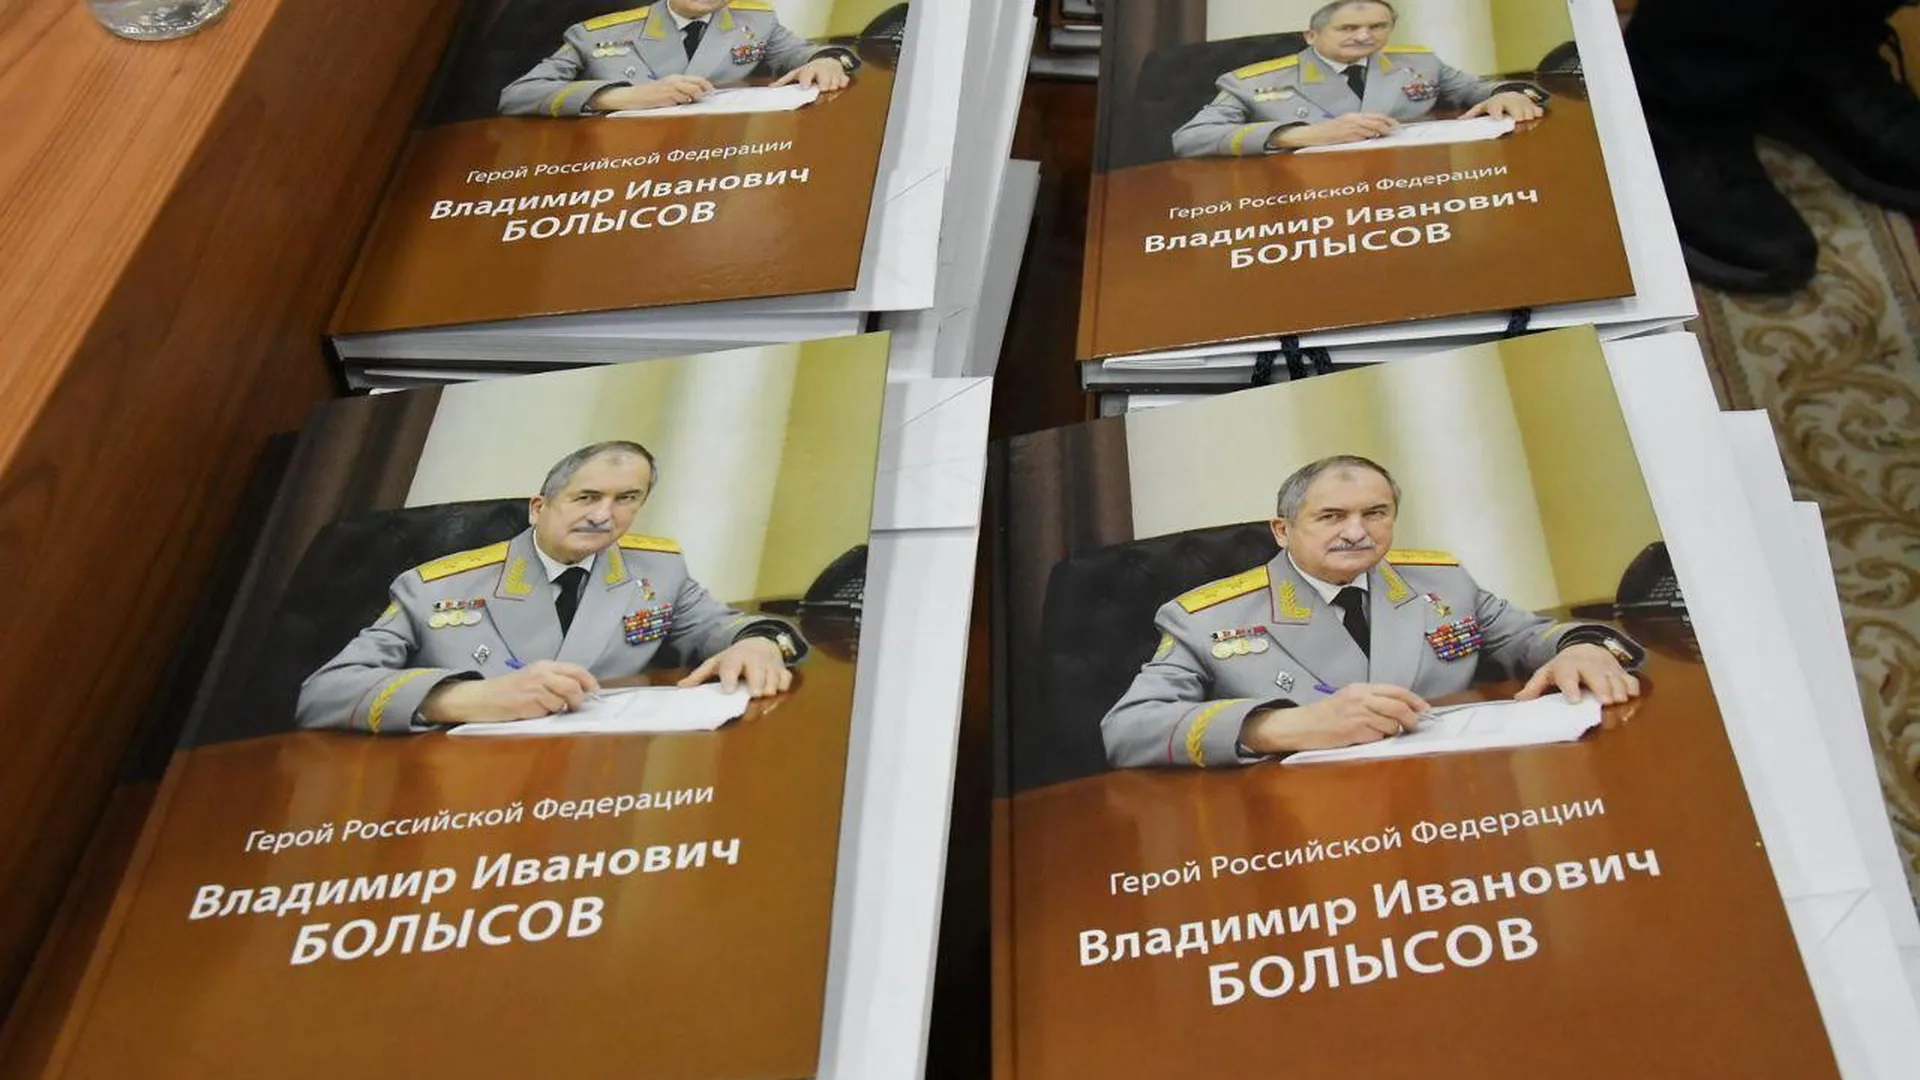 Жителям Власихи презентовали книгу о создателе ракетных войск